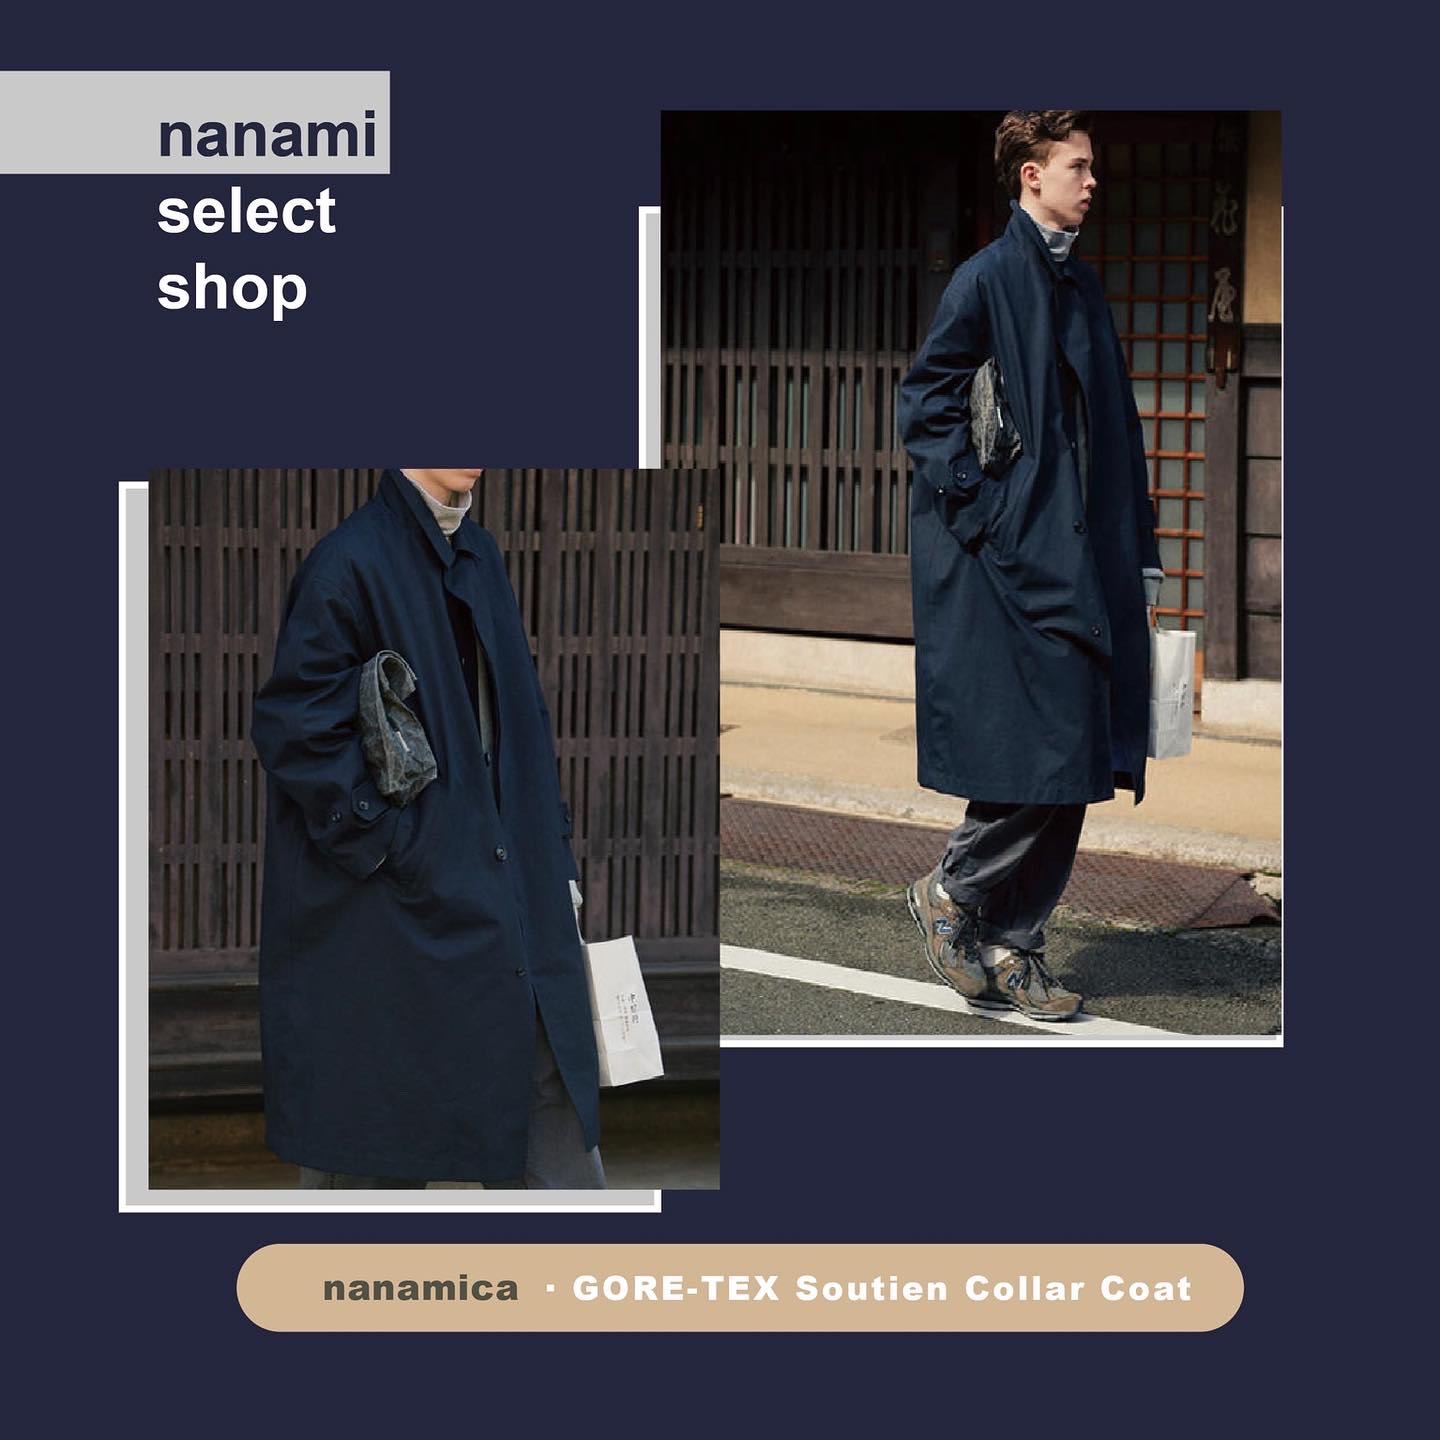 ○ nanamica GORE-TEX Soutien Collar Coat 防水風衣大衣外套, 她的